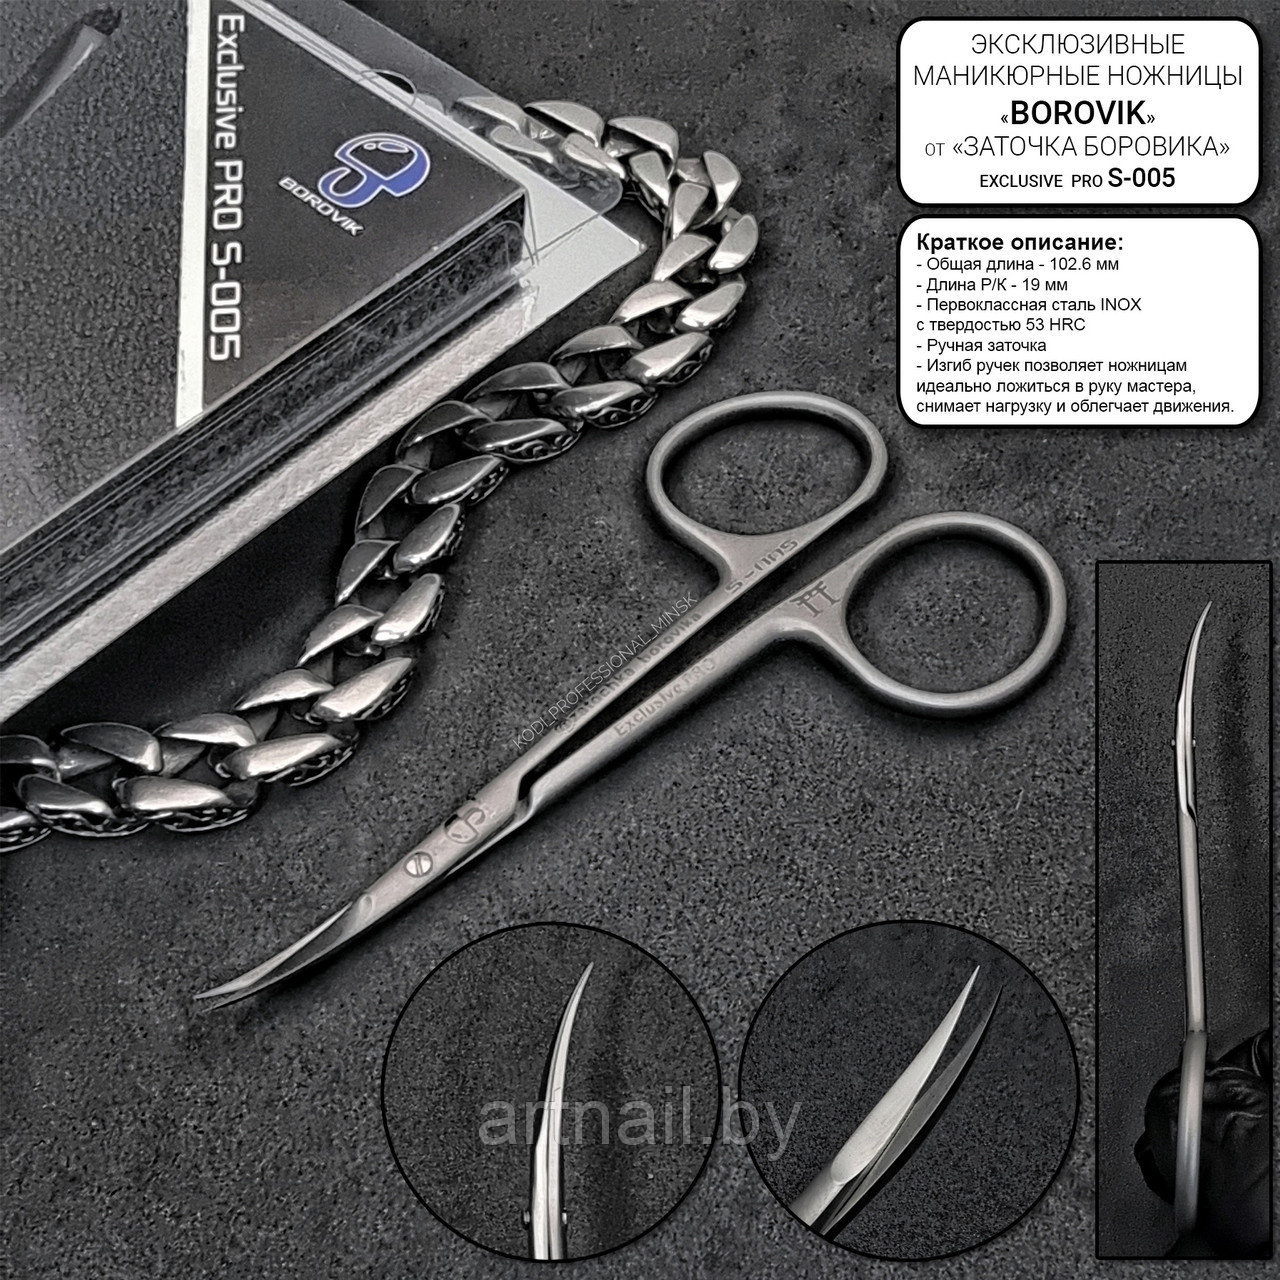 Ножницы маникюрные для кутикулы "Заточка Боровика" Exclusive PRO S-005 (аналог 1355)